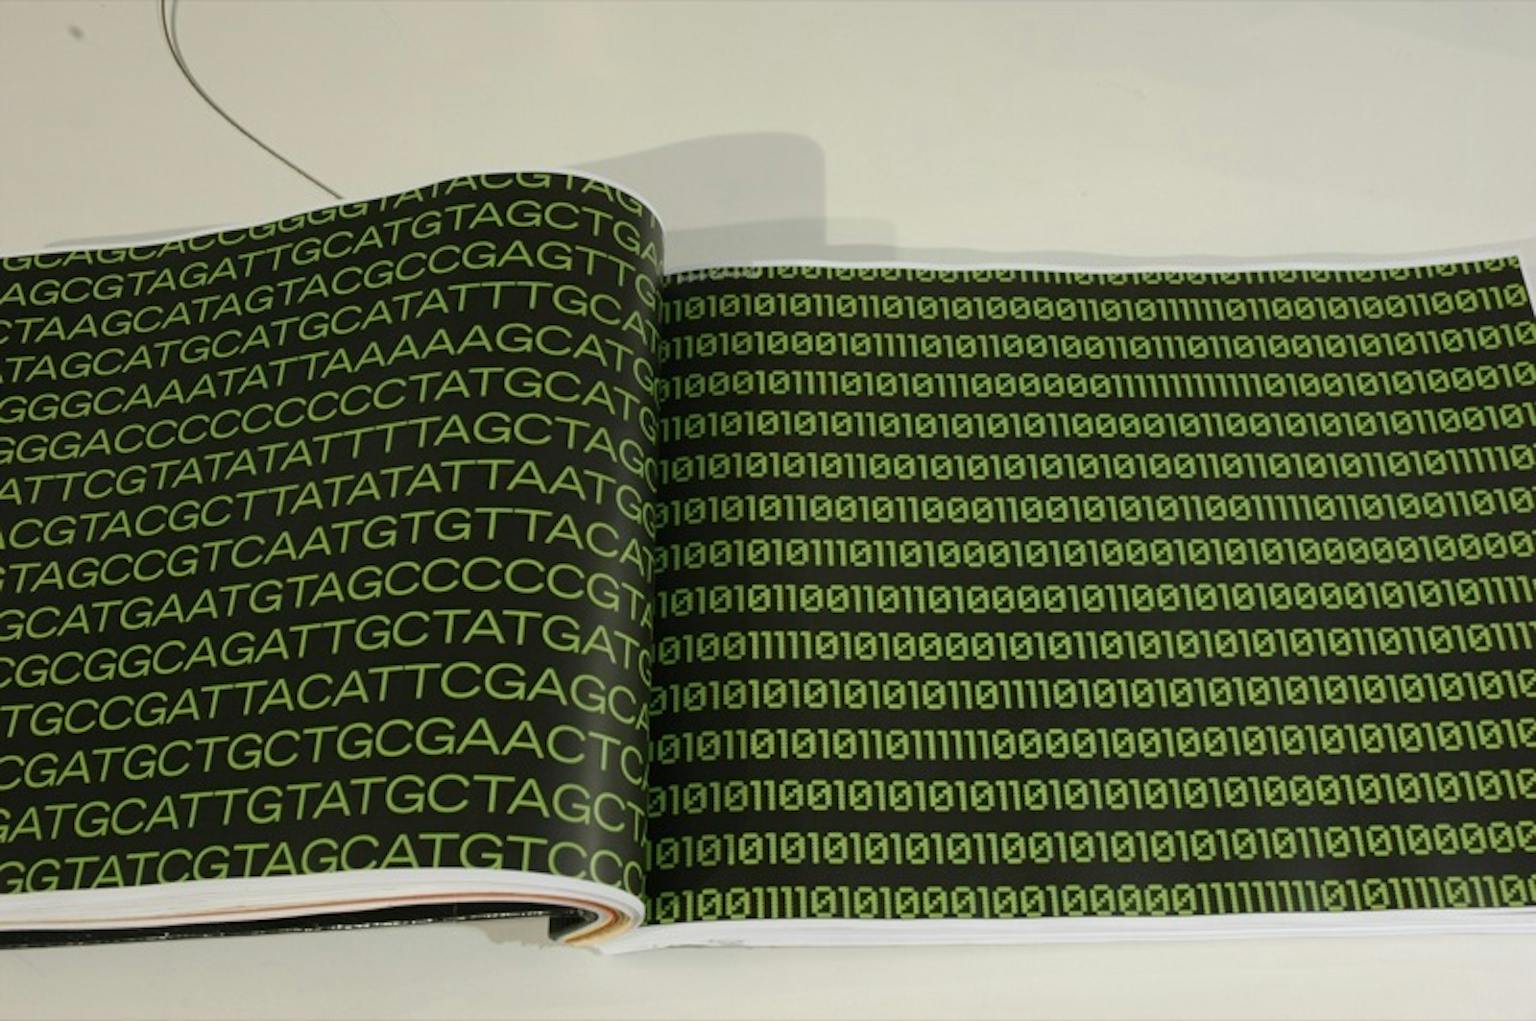 Een zwart boek op een tafel die is opgengeslagen. Op de pagina staan groene letters en cijfers.